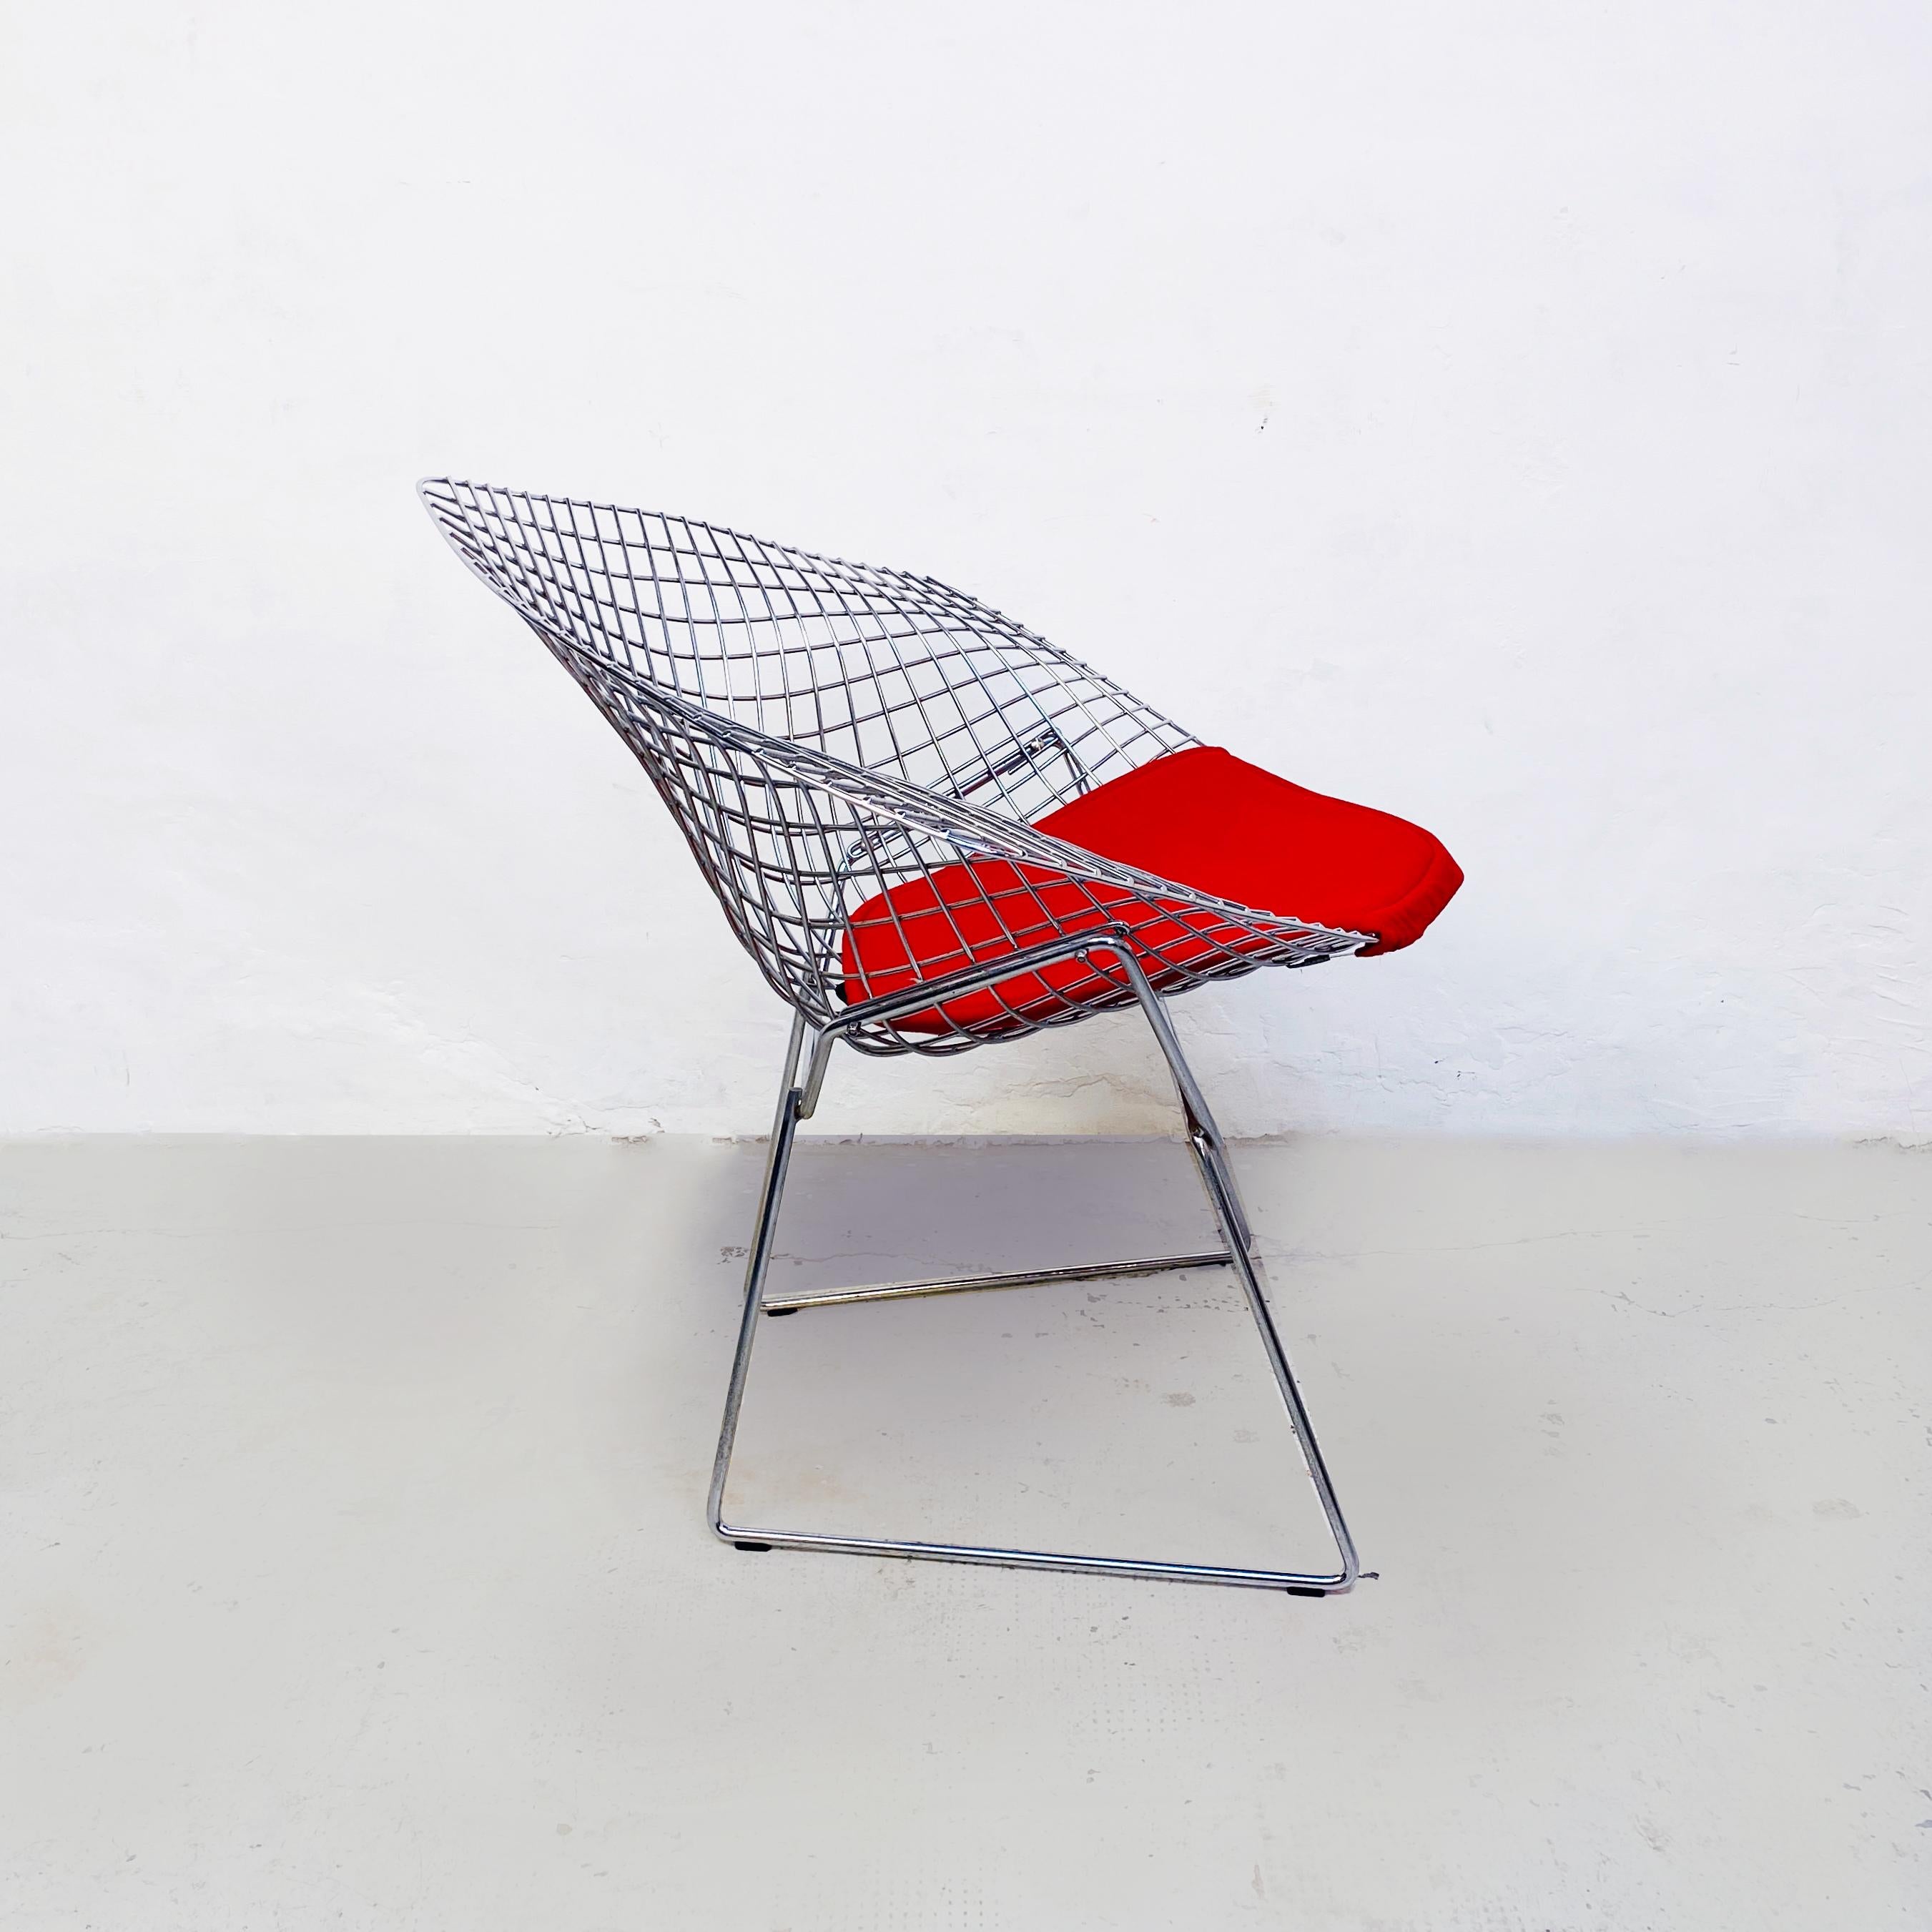 USA Mitte des Jahrhunderts Roter Polster- und Stahlsessel Diamond von Bertoia für Knoll, 1970er Jahre.
Diamant-Sessel mit Struktur aus geschweißten, glänzend verchromten Stahlstäben. Das rote Kissen wird mit versteckten Monofilamenten und